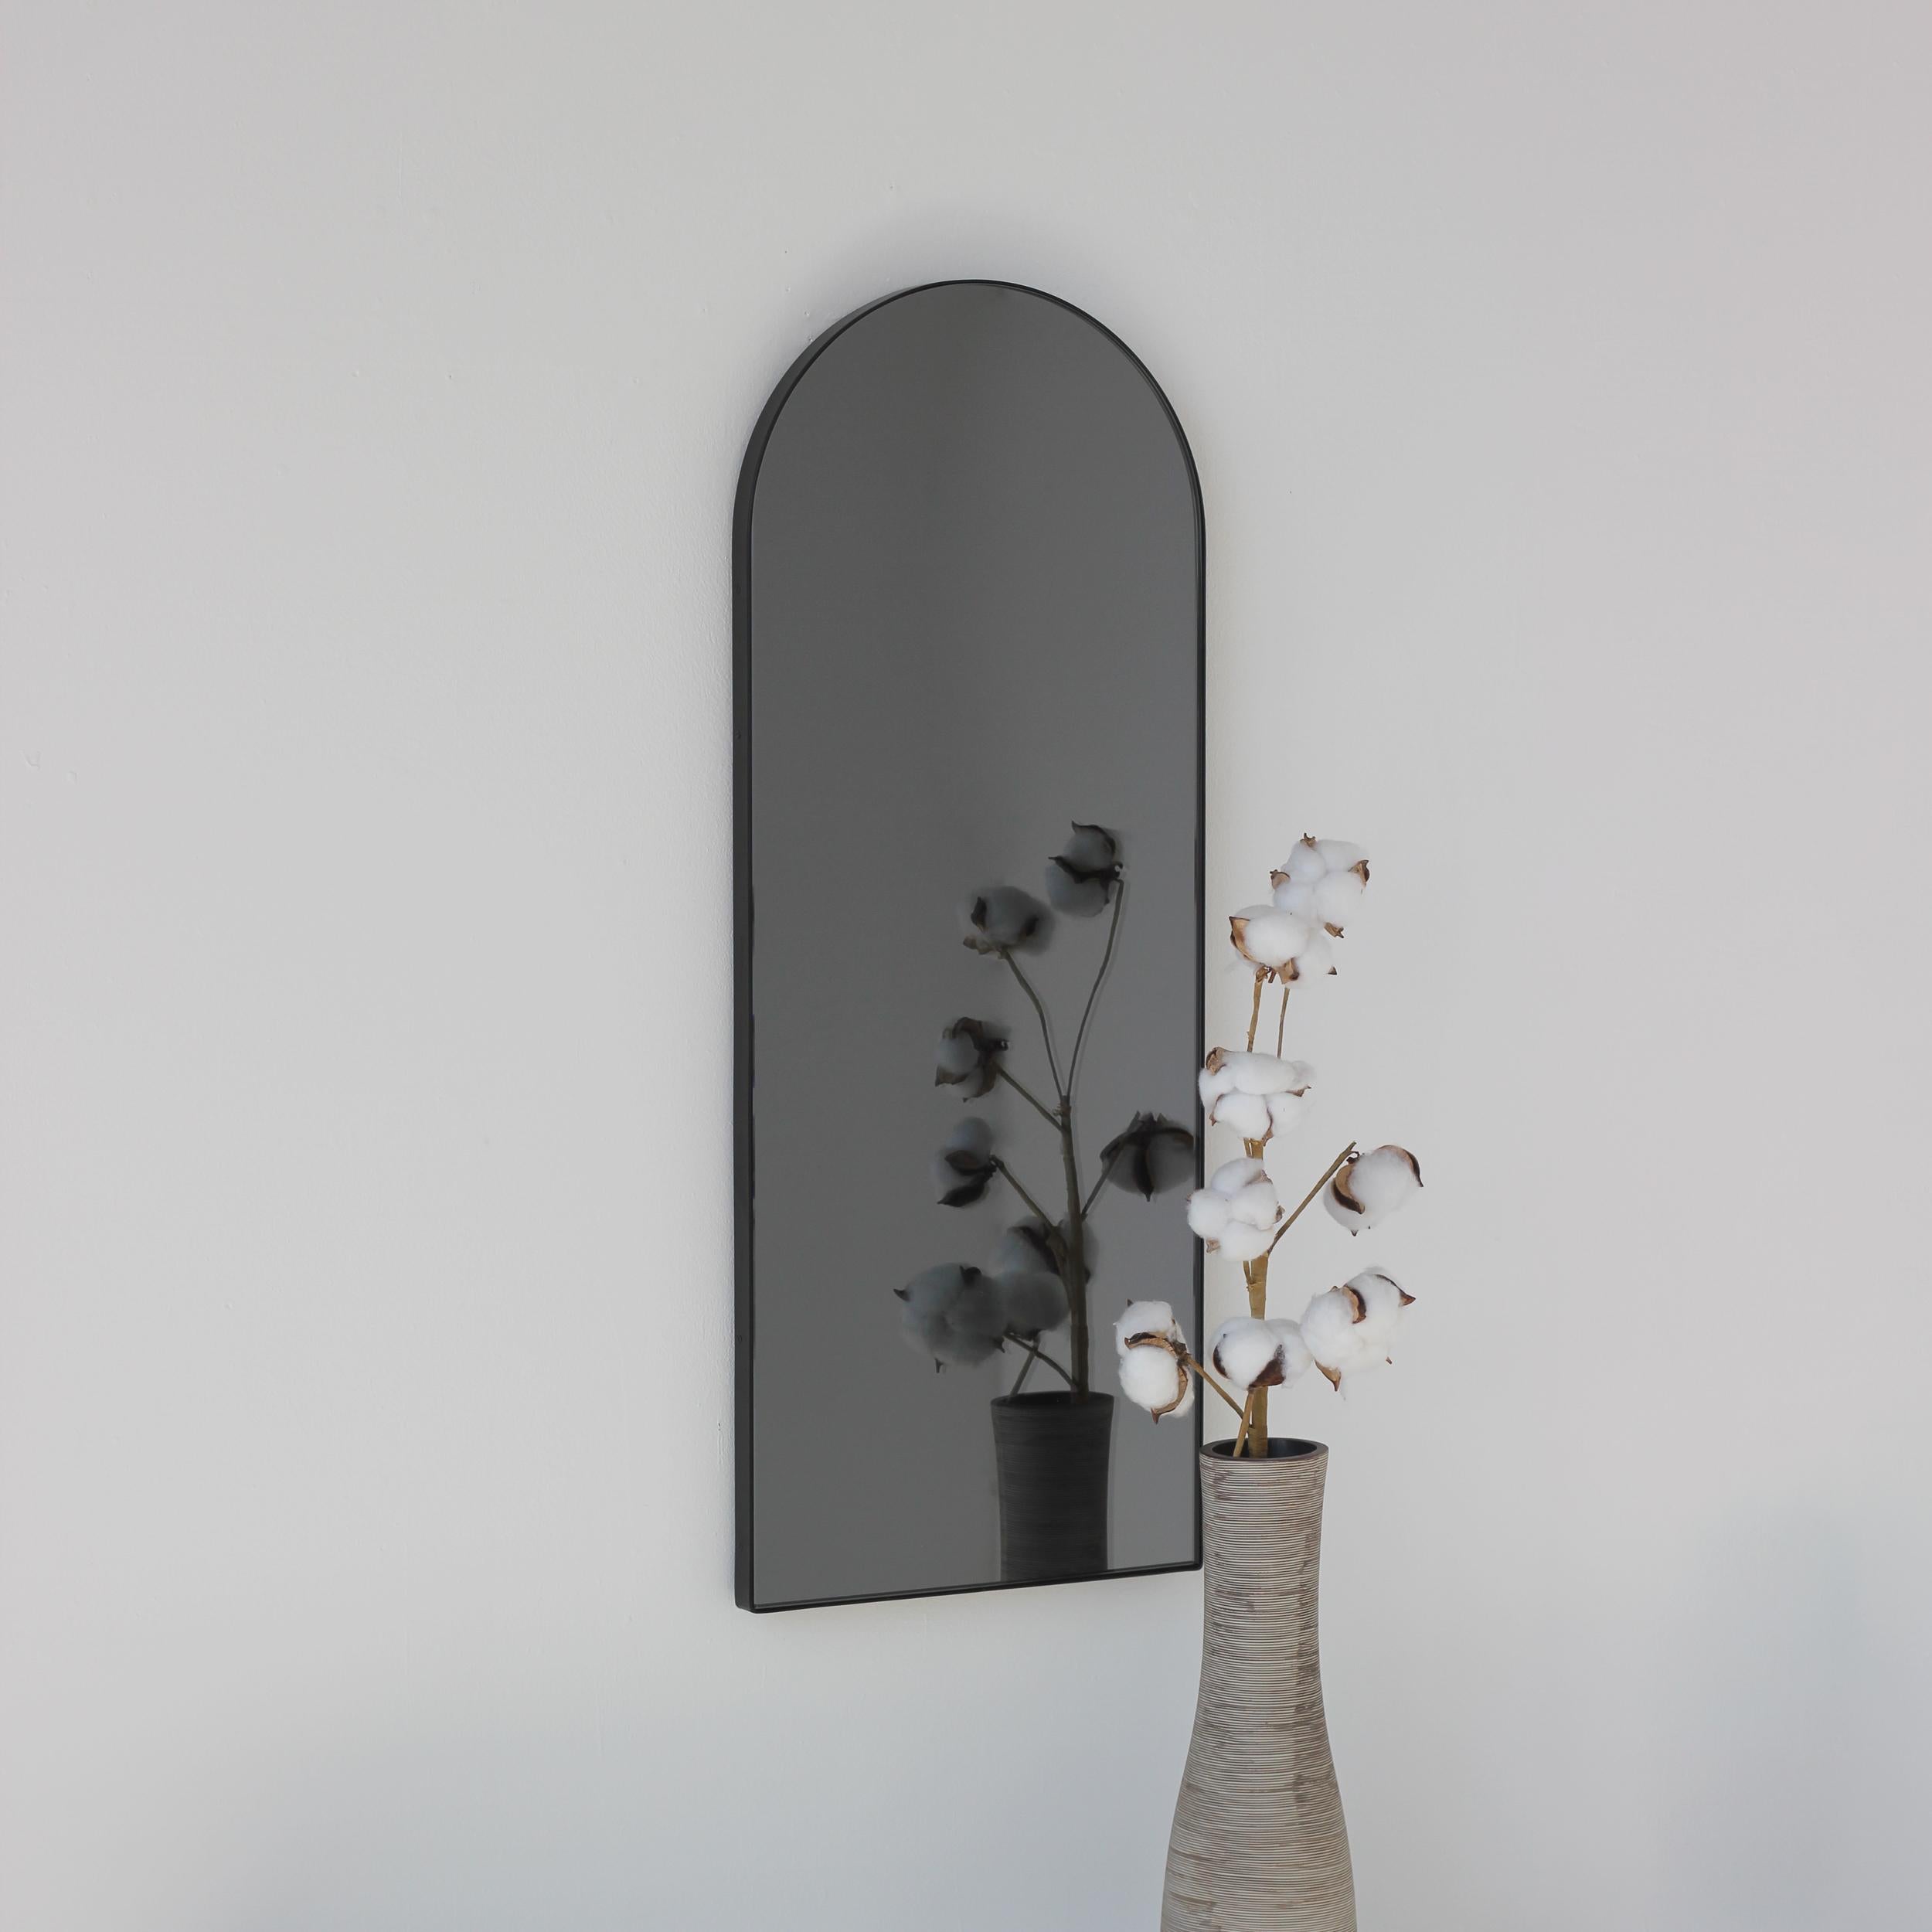 Miroir contemporain teinté noir en forme d'arc avec un élégant cadre noir. Conçu et fabriqué à la main à Londres, au Royaume-Uni.

Les miroirs de taille moyenne, grande et extra-large (37cm x 56cm, 46cm x 71cm et 48cm x 97cm) sont équipés d'un